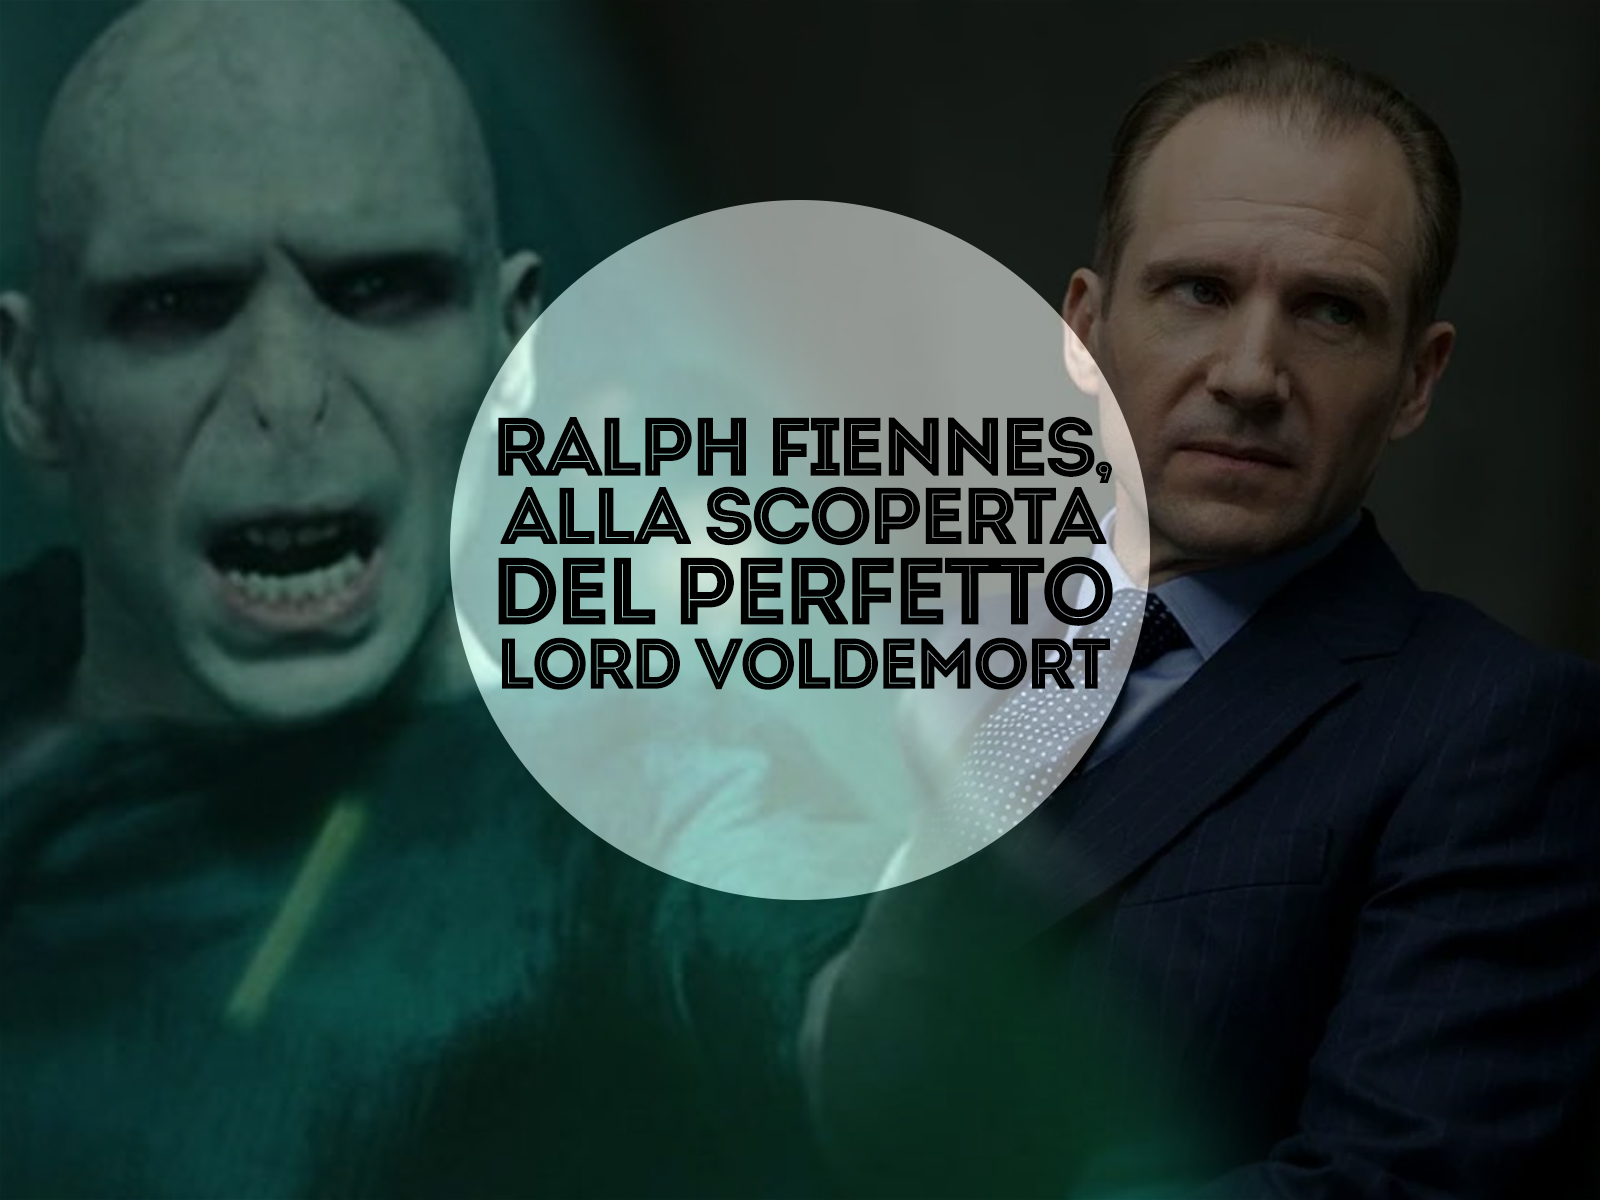 Ralph Fiennes, alla scoperta del perfetto Lord Voldemort